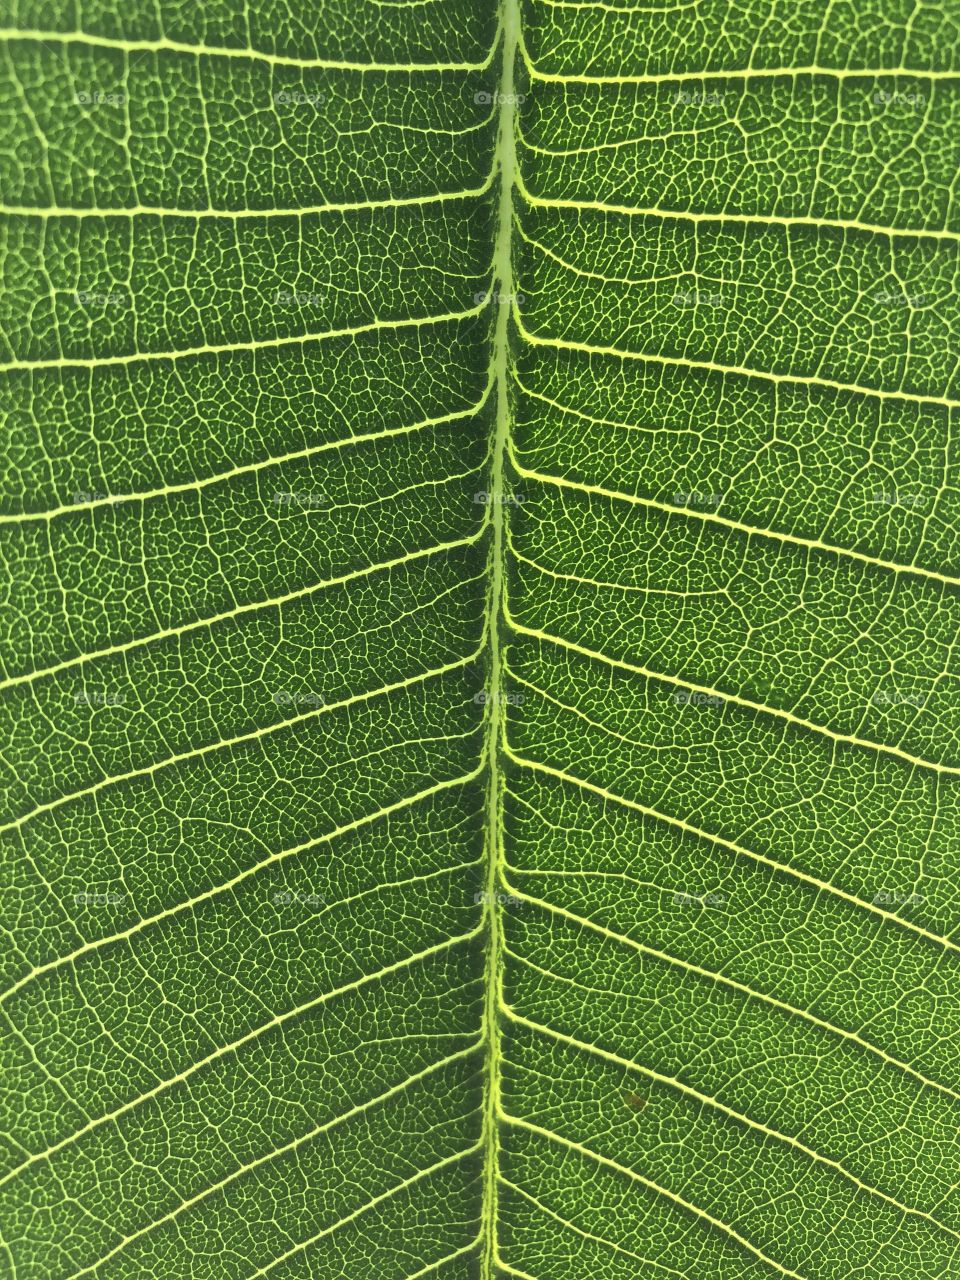 Leaf of Plumeria